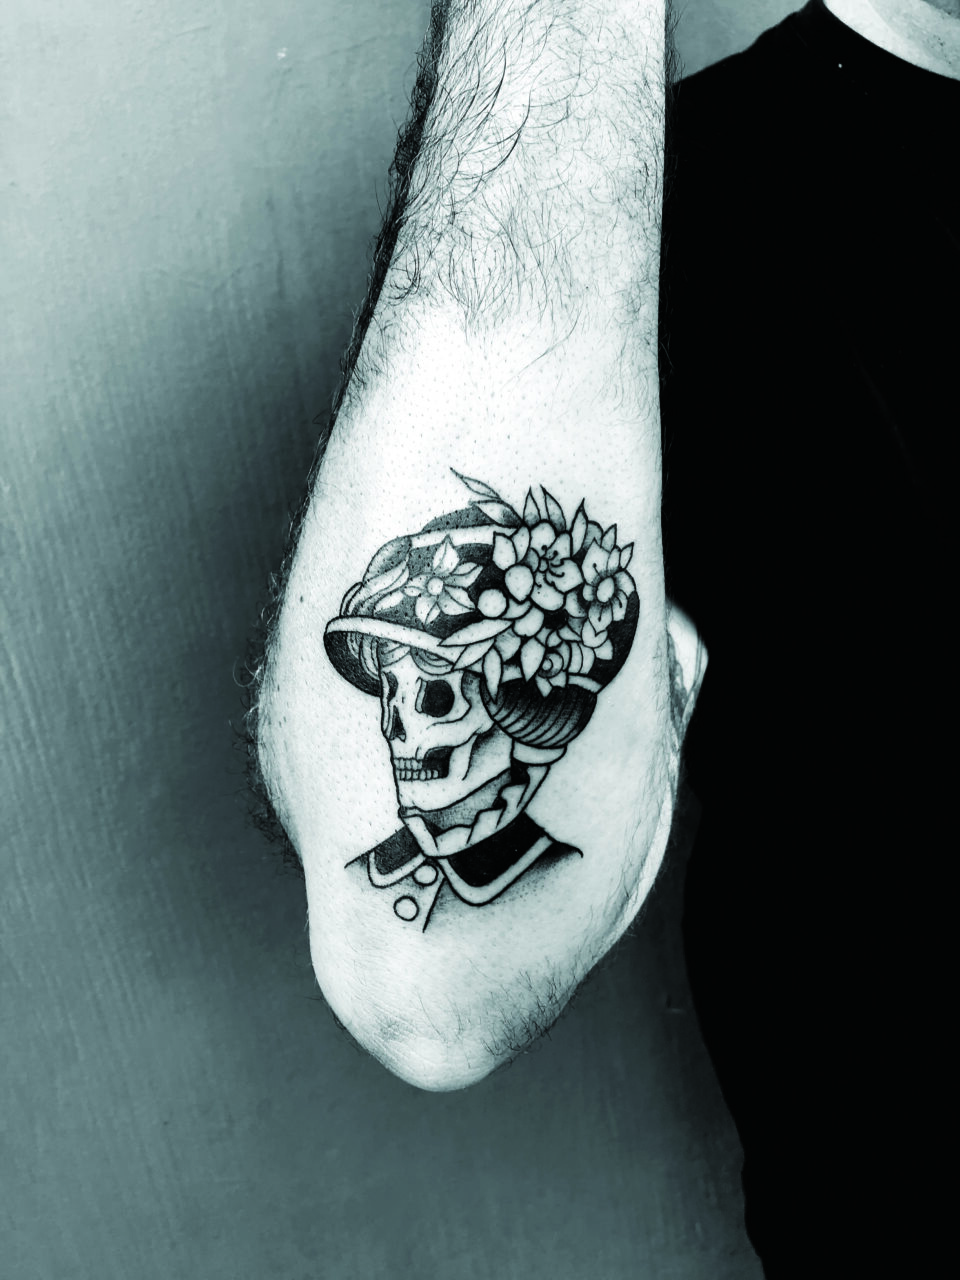 Veenom tattoo skull lady